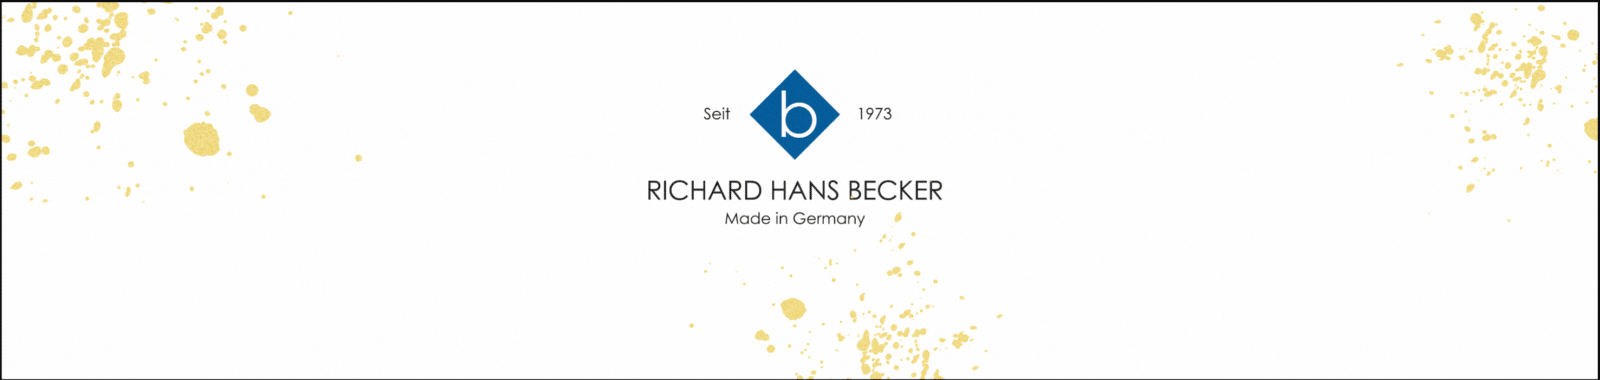 1600x380 Richard Hans Becker